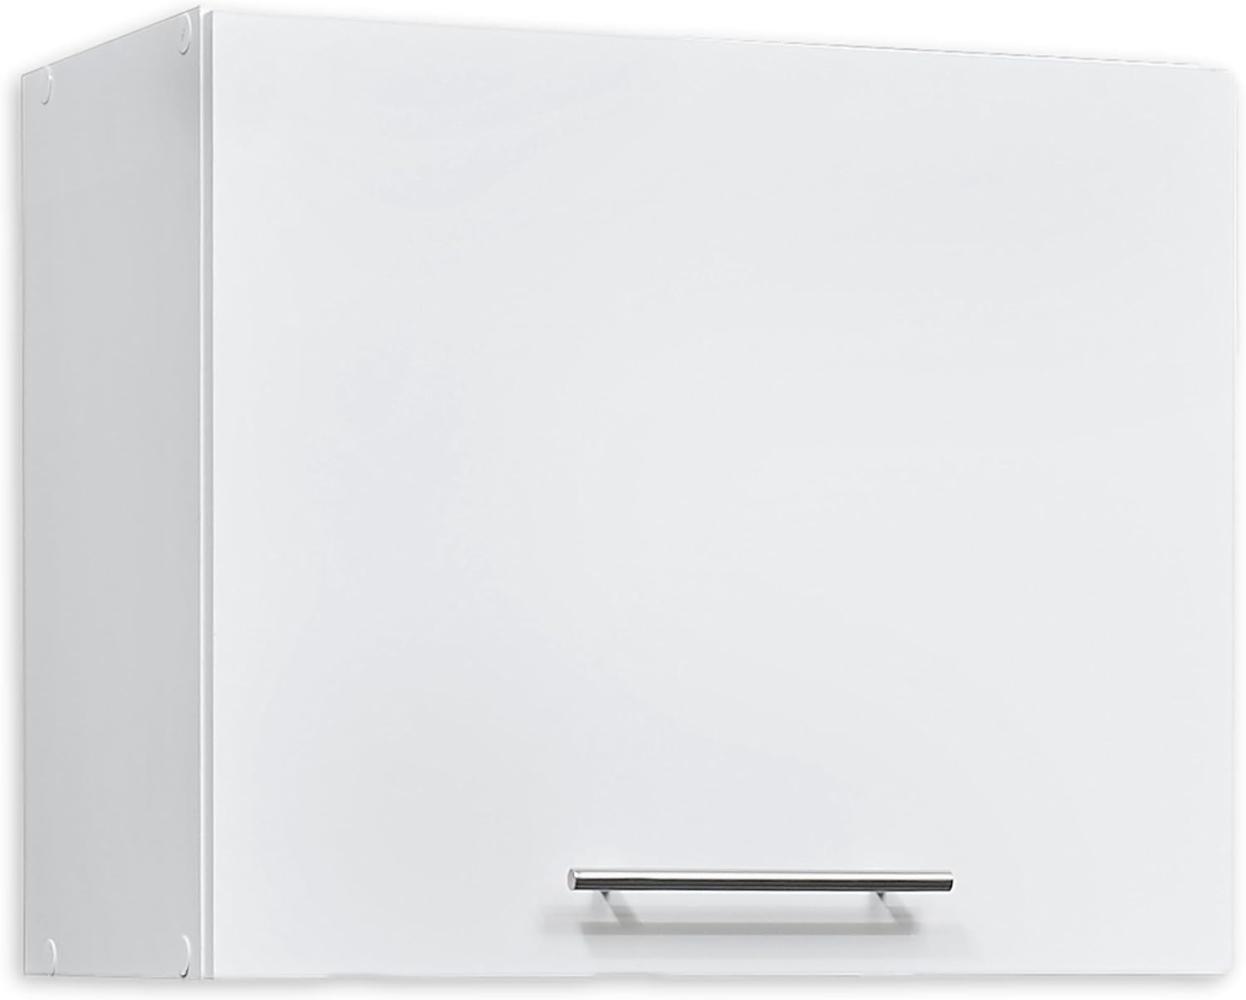 EDDY Moderner Hängeschrank Küche in Weiß matt - Geräumiger Küchenschrank mit viel Stauraum - 60 x 50 x 31 cm (B/H/T) Bild 1